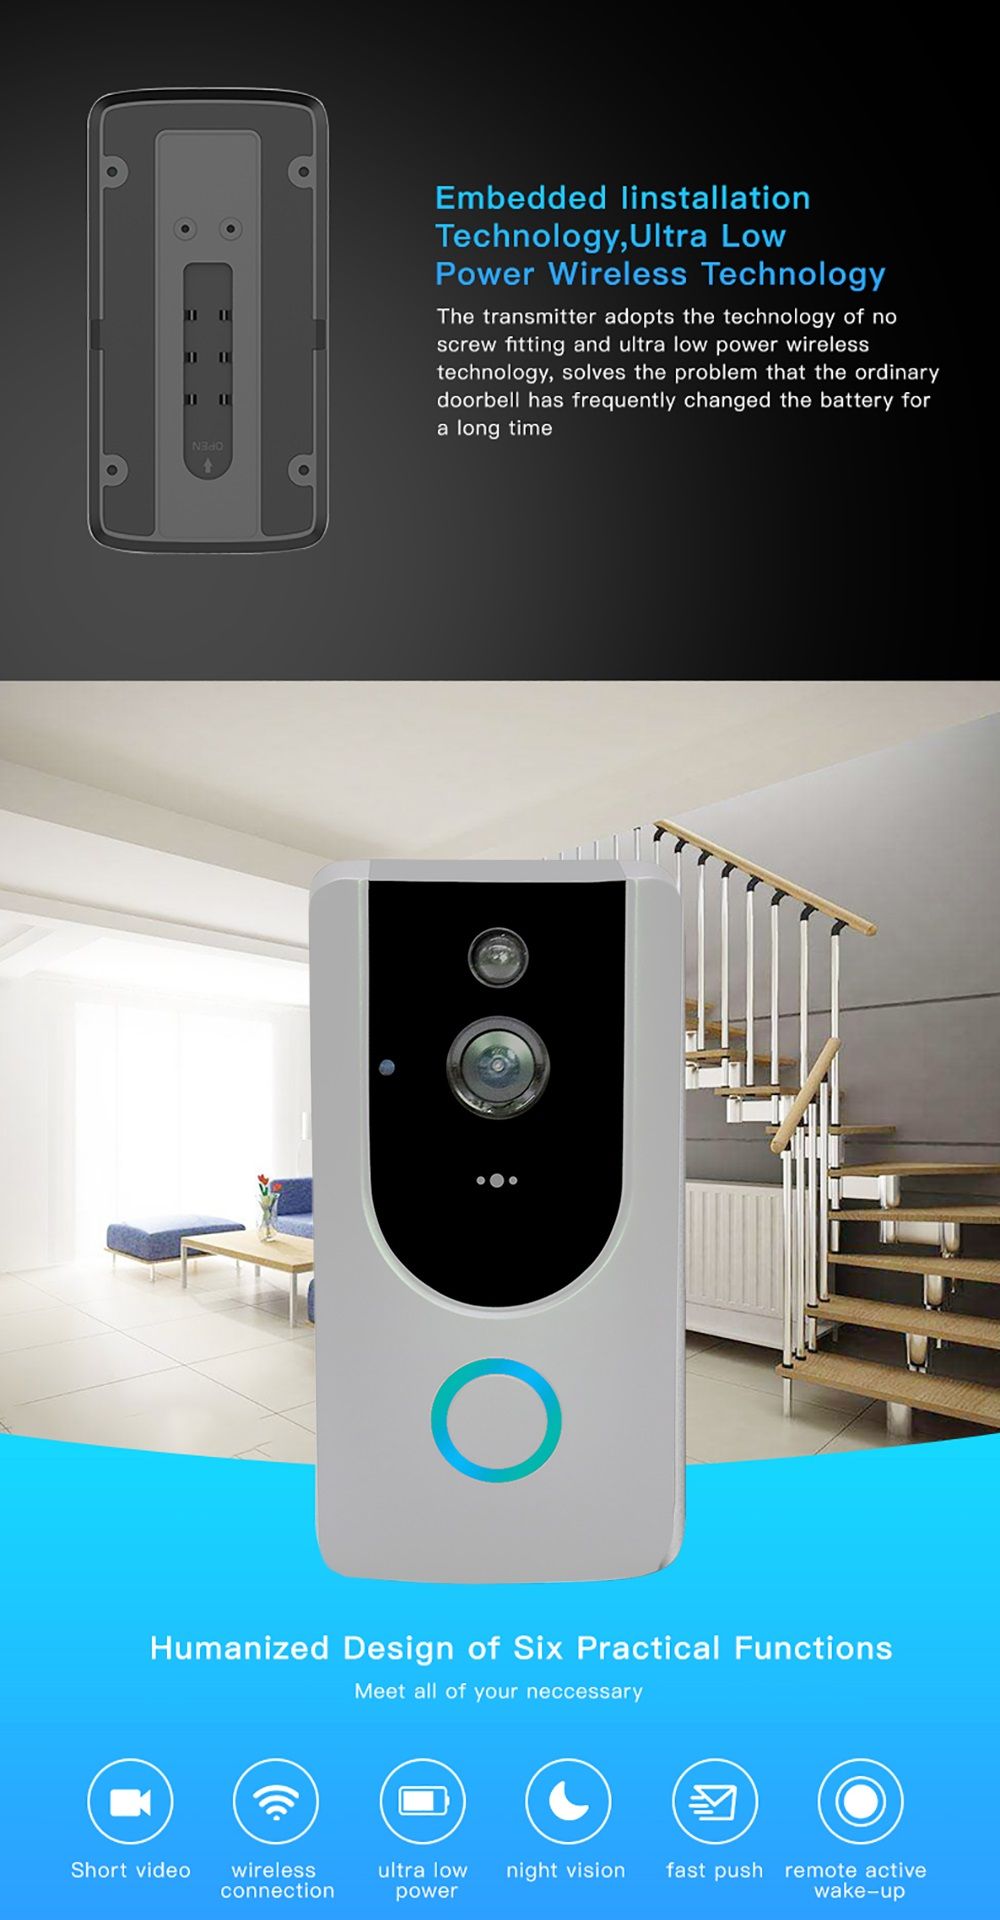 M2-Wireless-720P-Smart-WiFi-Video-Doorbell-Door-Phone-Intercom-with-DingDong-Chime-PIR-Sensor-Alarm--1555919